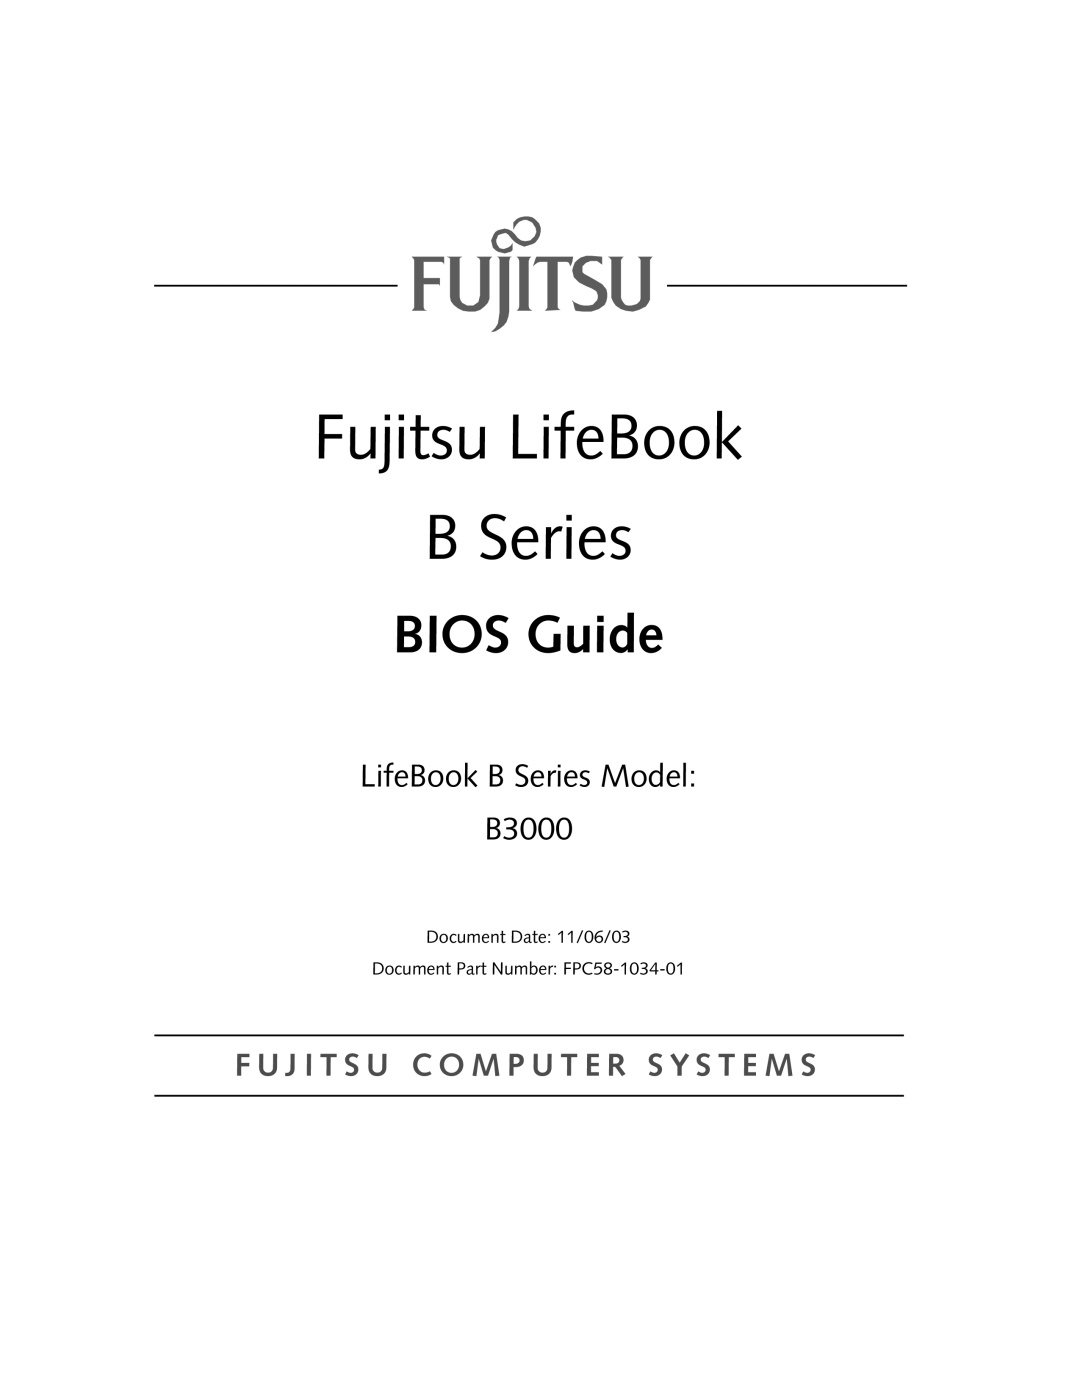 Fujitsu Siemens Computers manual Fujitsu LifeBook, BIOS Guide, LifeBook B Series Model B3000 